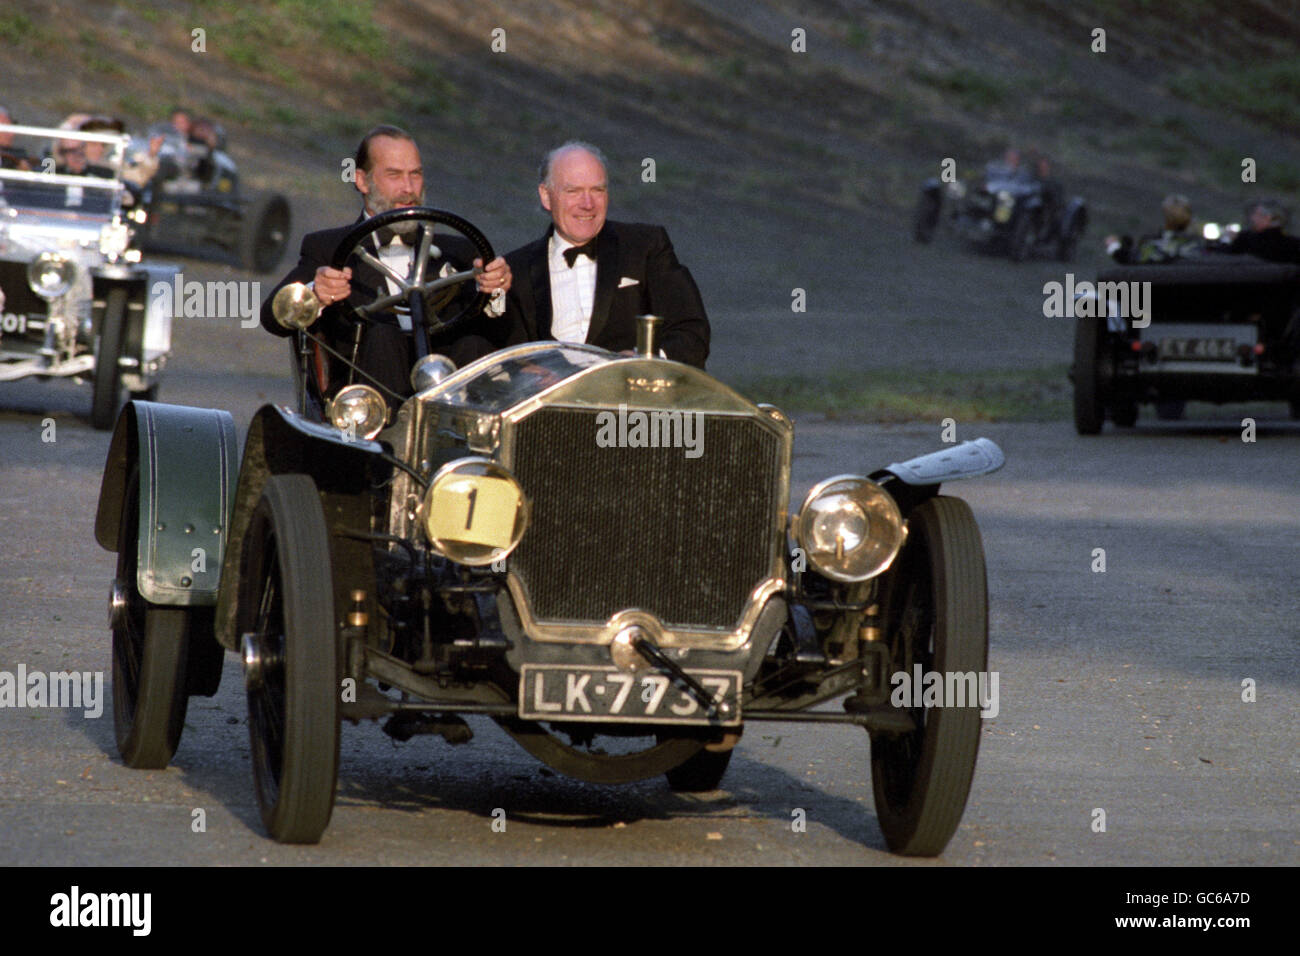 El príncipe Michael de Kent, a la izquierda, conduciendo un Napier 1908 alrededor del circuito de Brooklands. El Príncipe estuvo en Brooklands para celebrar el 85 cumpleaños de la pista de carreras y el aeródromo. Foto de stock